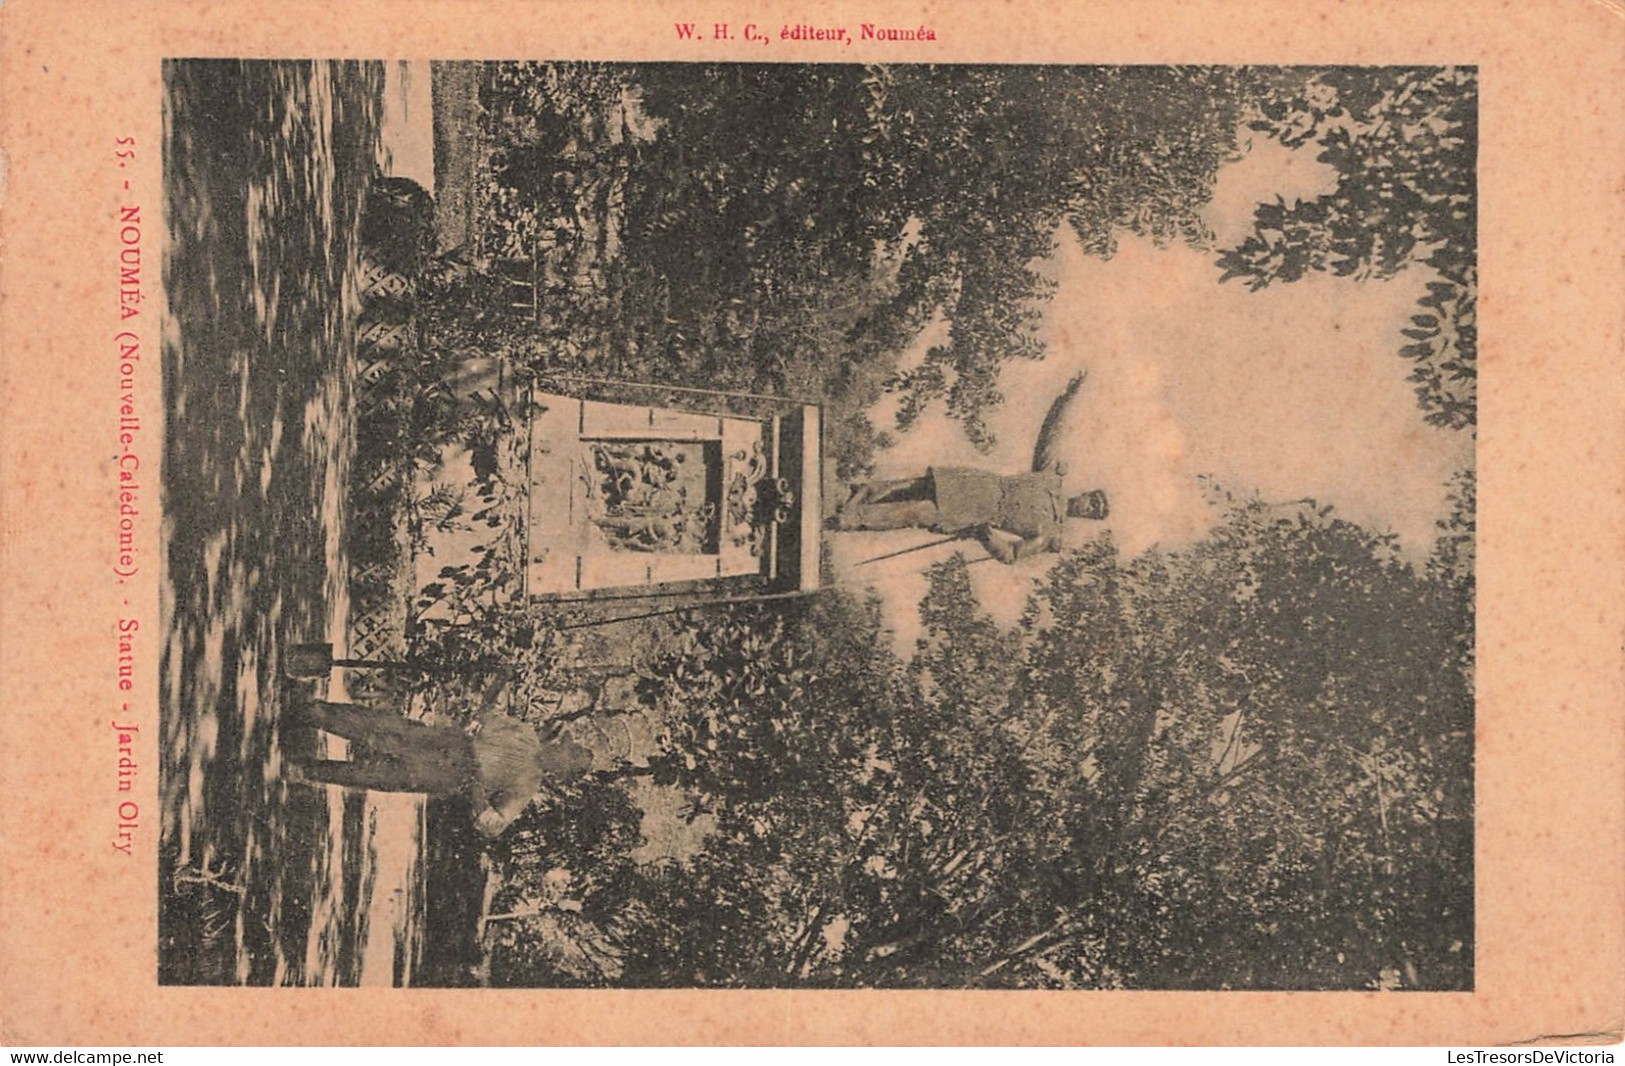 Nouvelle Calédonie - Nouméa - Statue Jardin Olry - Animé - Edit. W.H.C. - Carte Postale Ancienne - Nouvelle-Calédonie